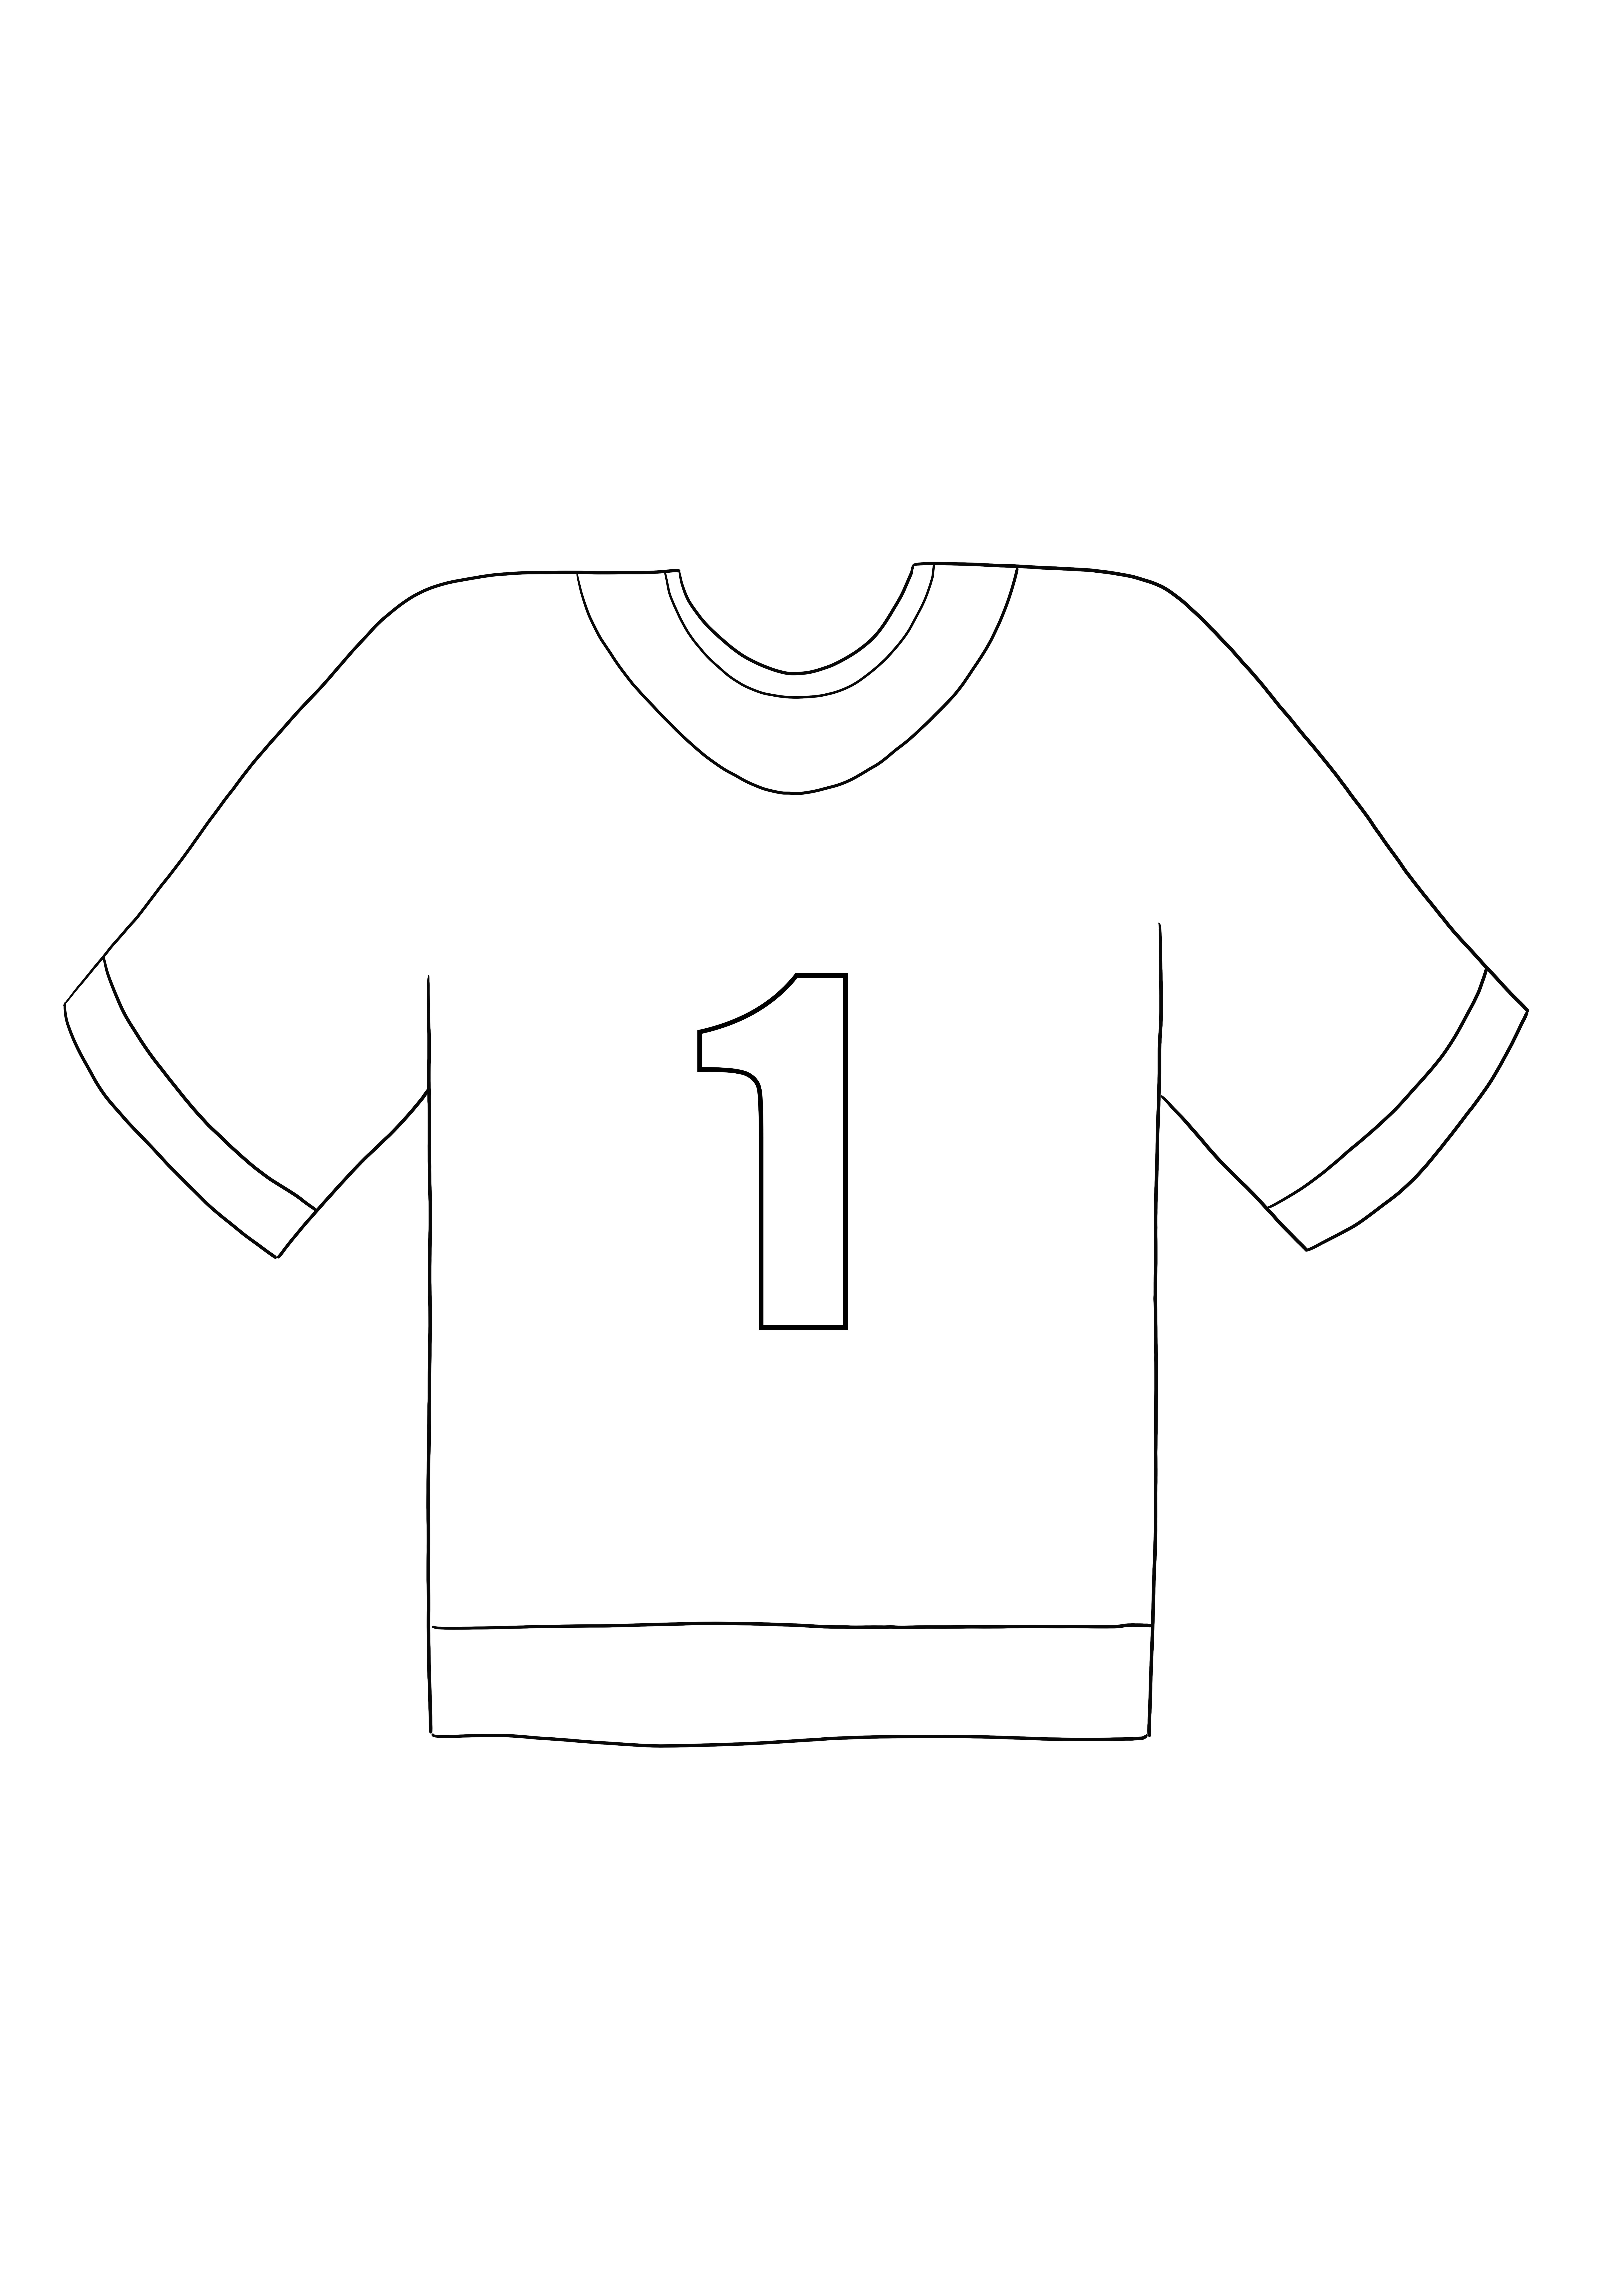 O imagine ușor de colorat din tricoul de fotbal, care poate fi descărcată gratuită sau salvată pentru mai târziu